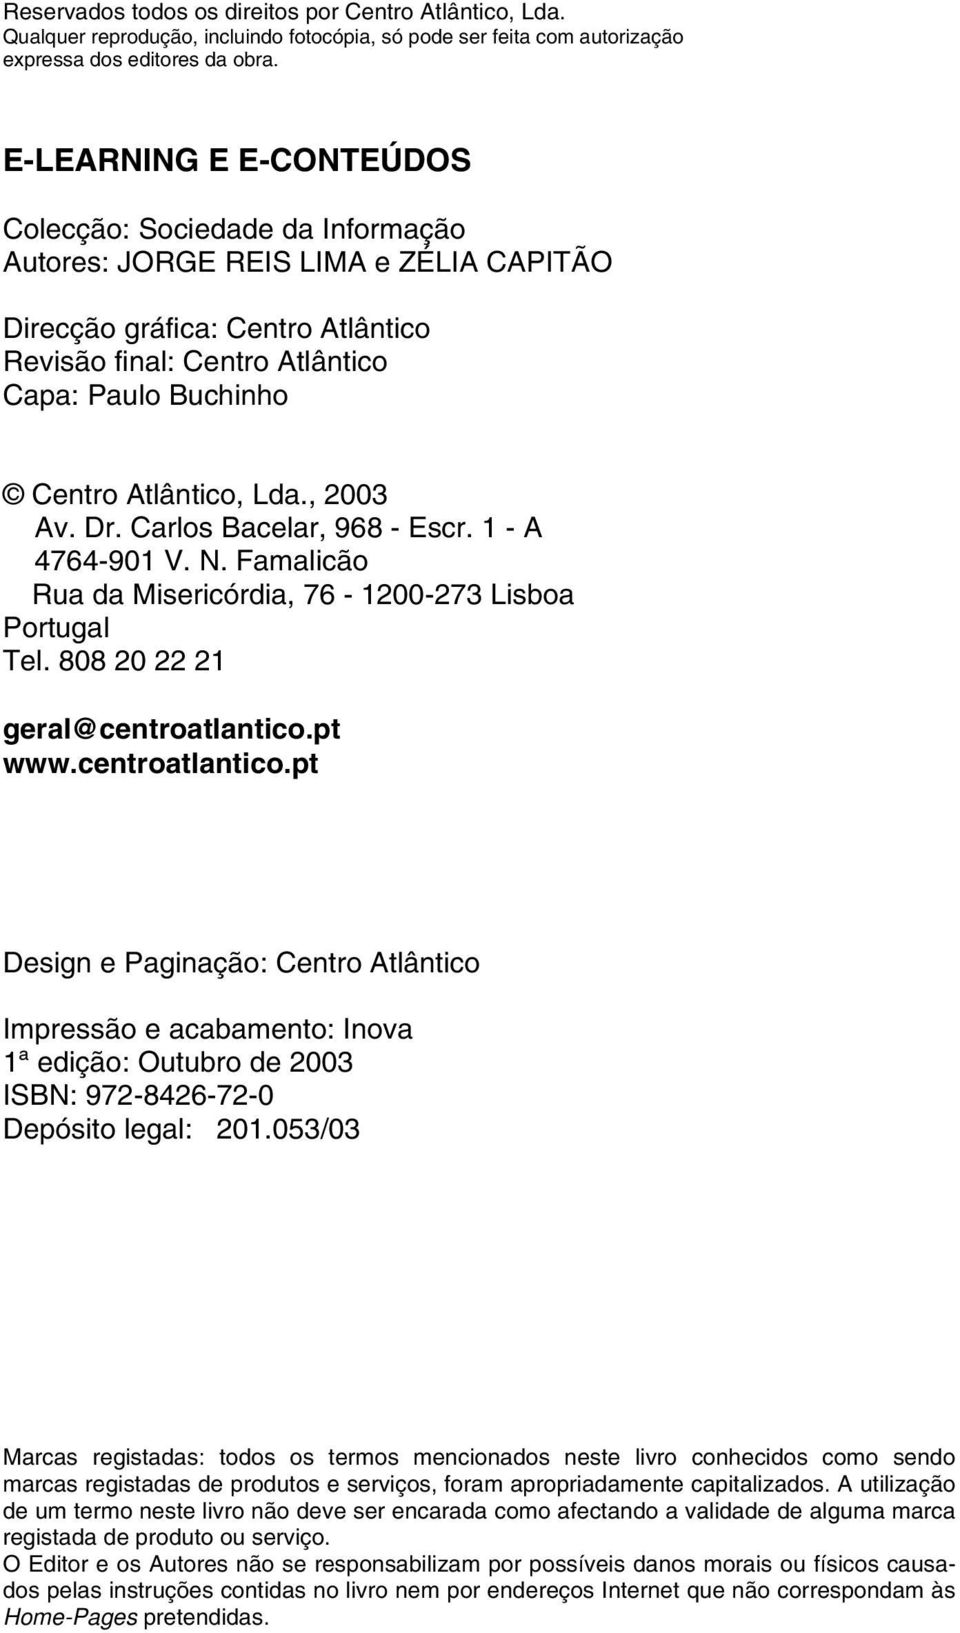 Atlântico, Lda., 2003 Av. Dr. Carlos Bacelar, 968 - Escr. 1 - A 4764-901 V. N. Famalicão Rua da Misericórdia, 76-1200-273 Lisboa Portugal Tel. 808 20 22 21 geral@centroatlantico.pt www.